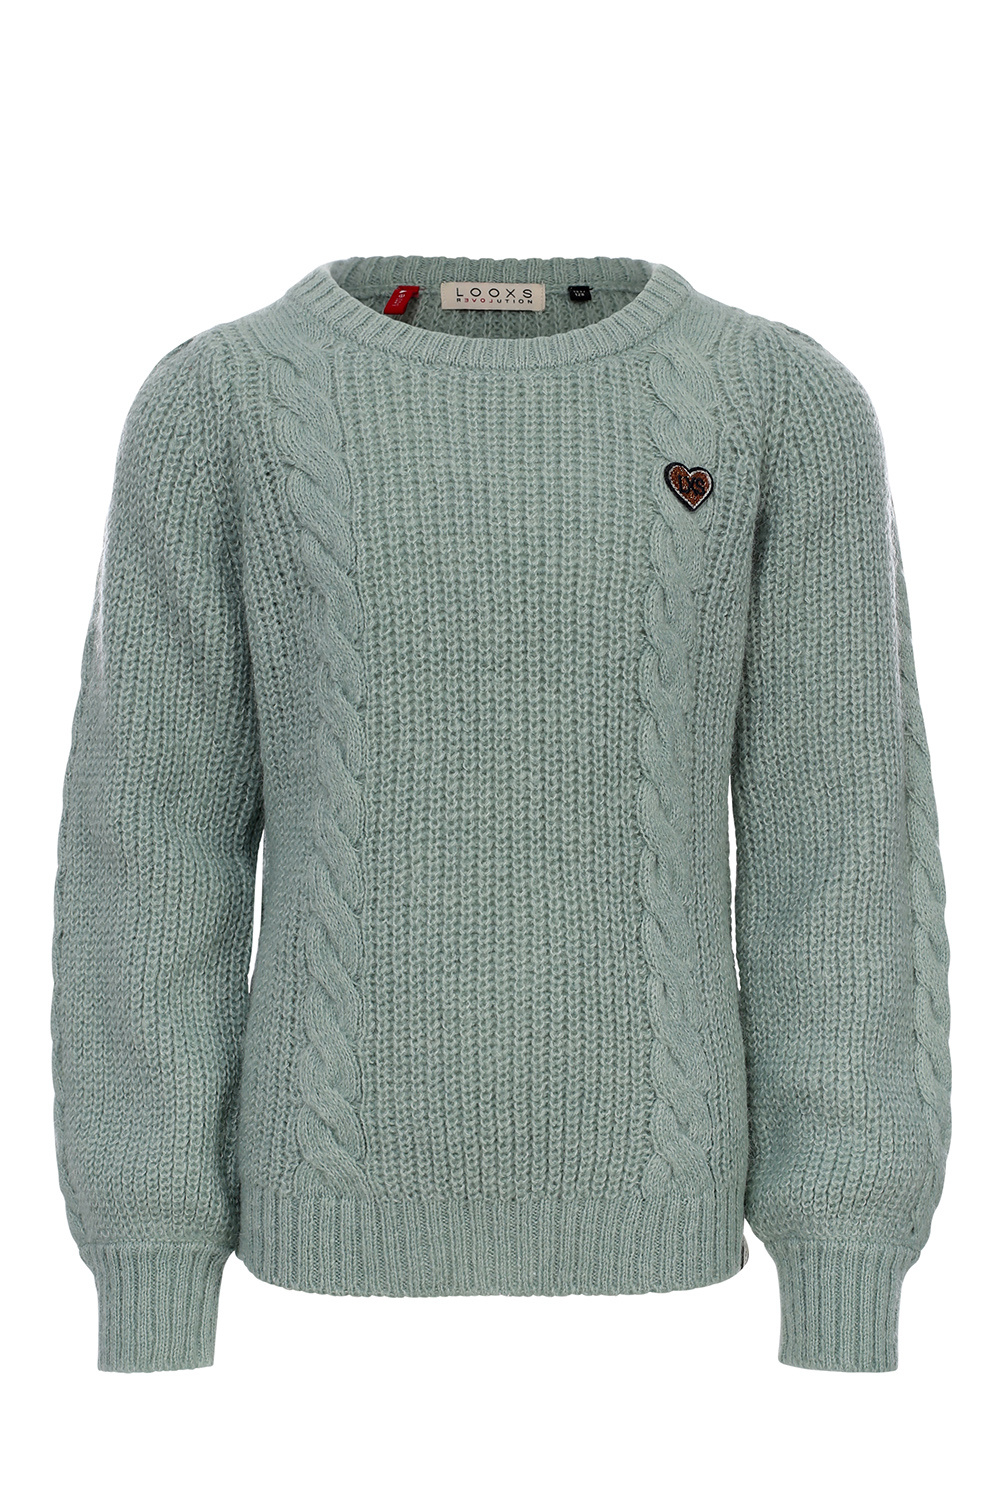 Looxs Revolution 2331-7304-351 Meisjes Sweater/Vest - Maat 110 - AQUA GREEN van